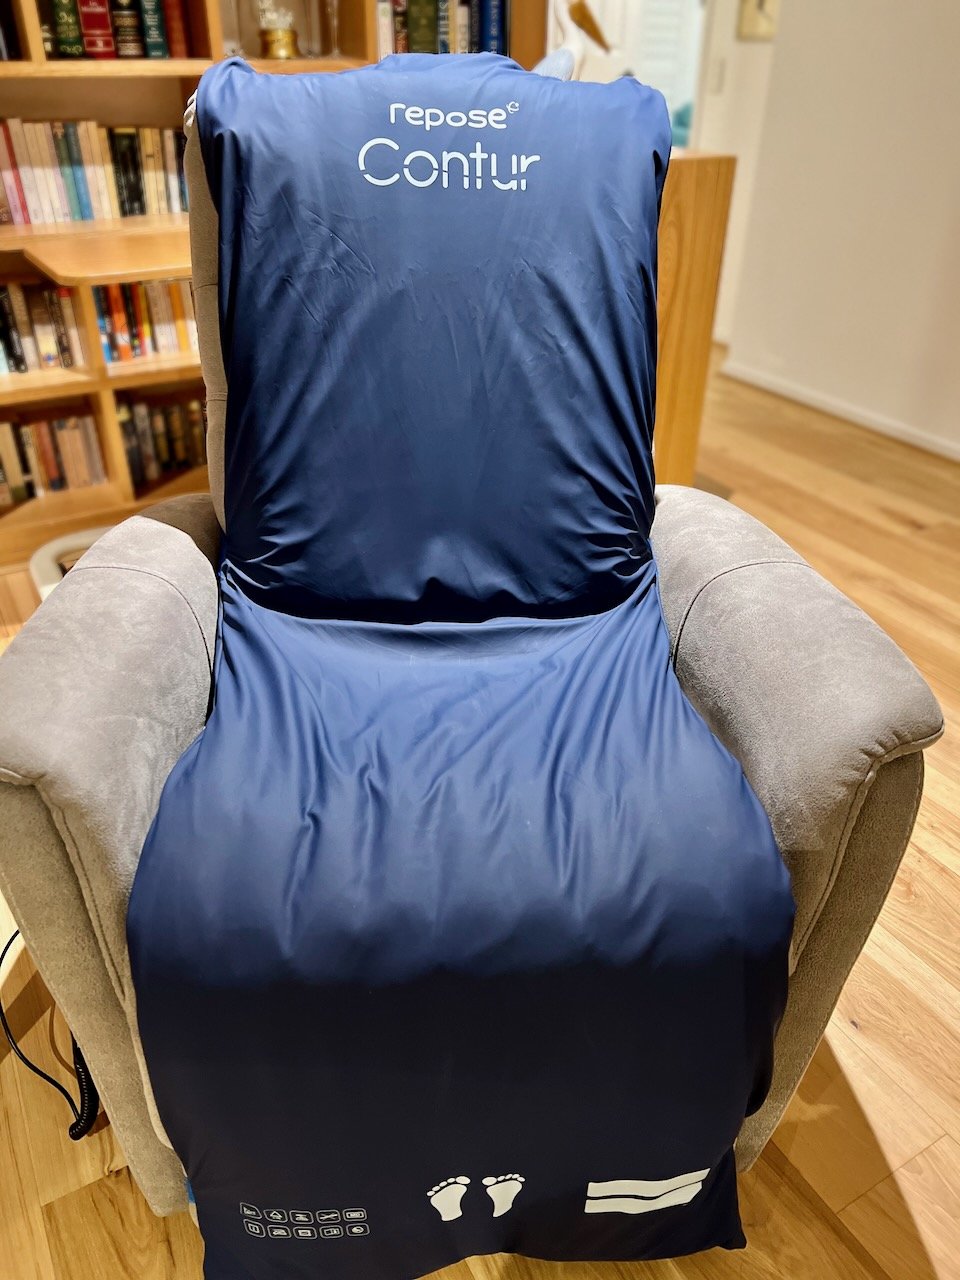 Chair overlay